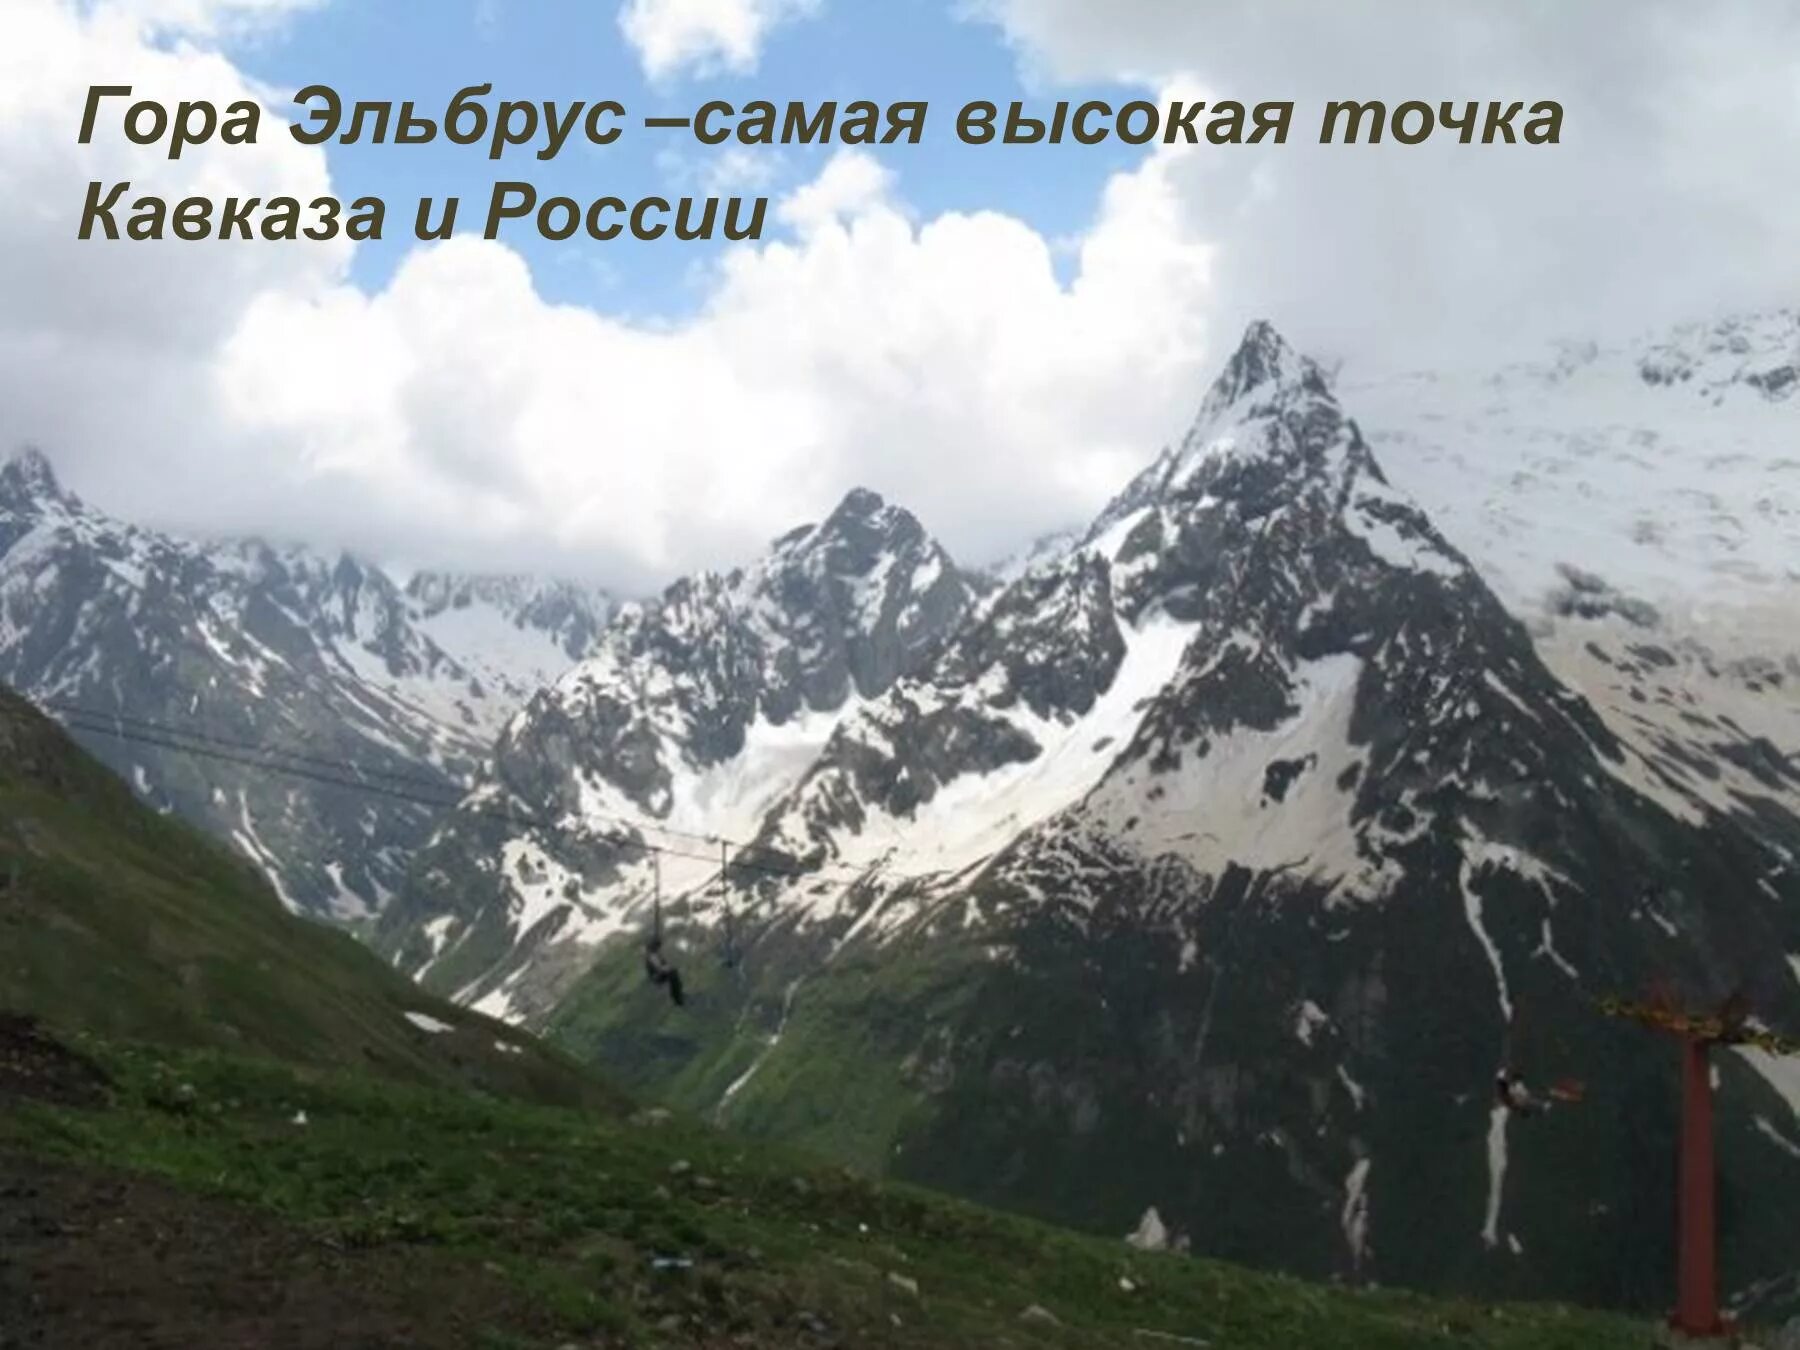 Название гор на кавказе в россии. Эльбрус горные вершины Кавказа. Кавказские горы наивысшая точка. Высокие точки Кавказа. Эльбрус самая высокая точка.